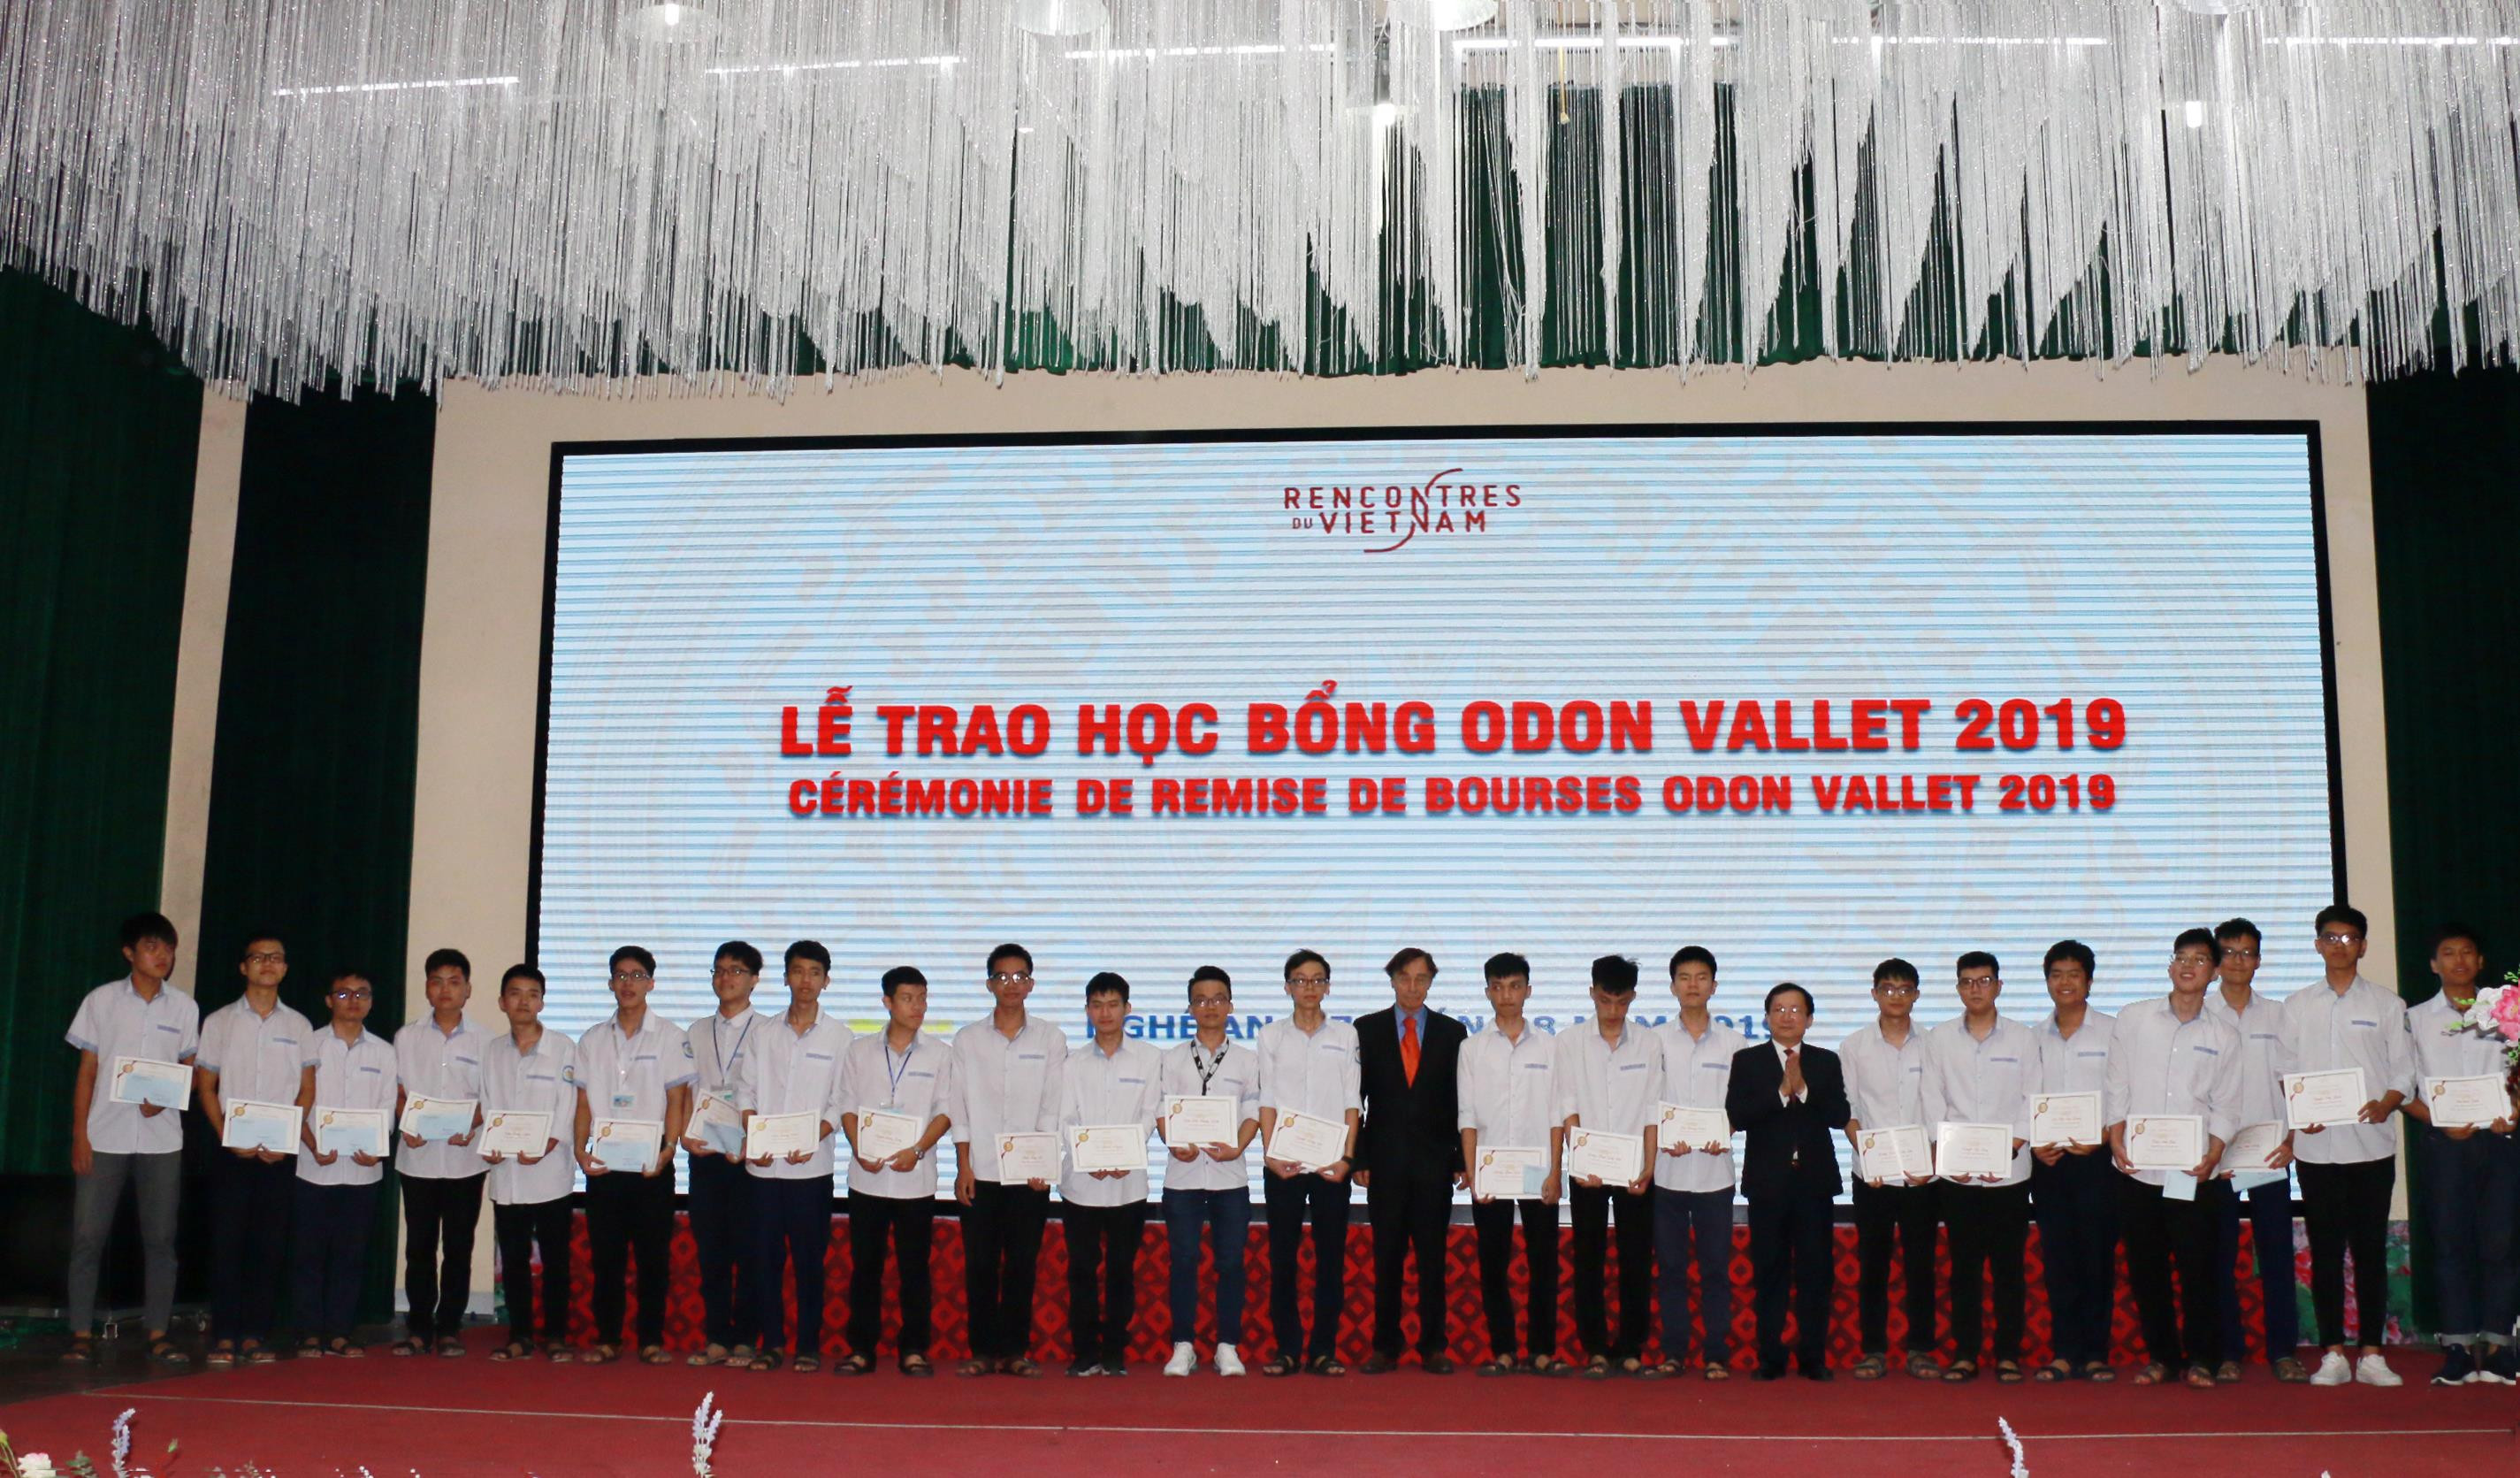 Phó Chủ tịch UBND tỉnh Đinh Viết Hồng và G.S Ô đôn Vallet trao học bổng cho các học sinh của Trường THPT chuyên Phan Bội Châu. Ảnh: Mỹ Hà